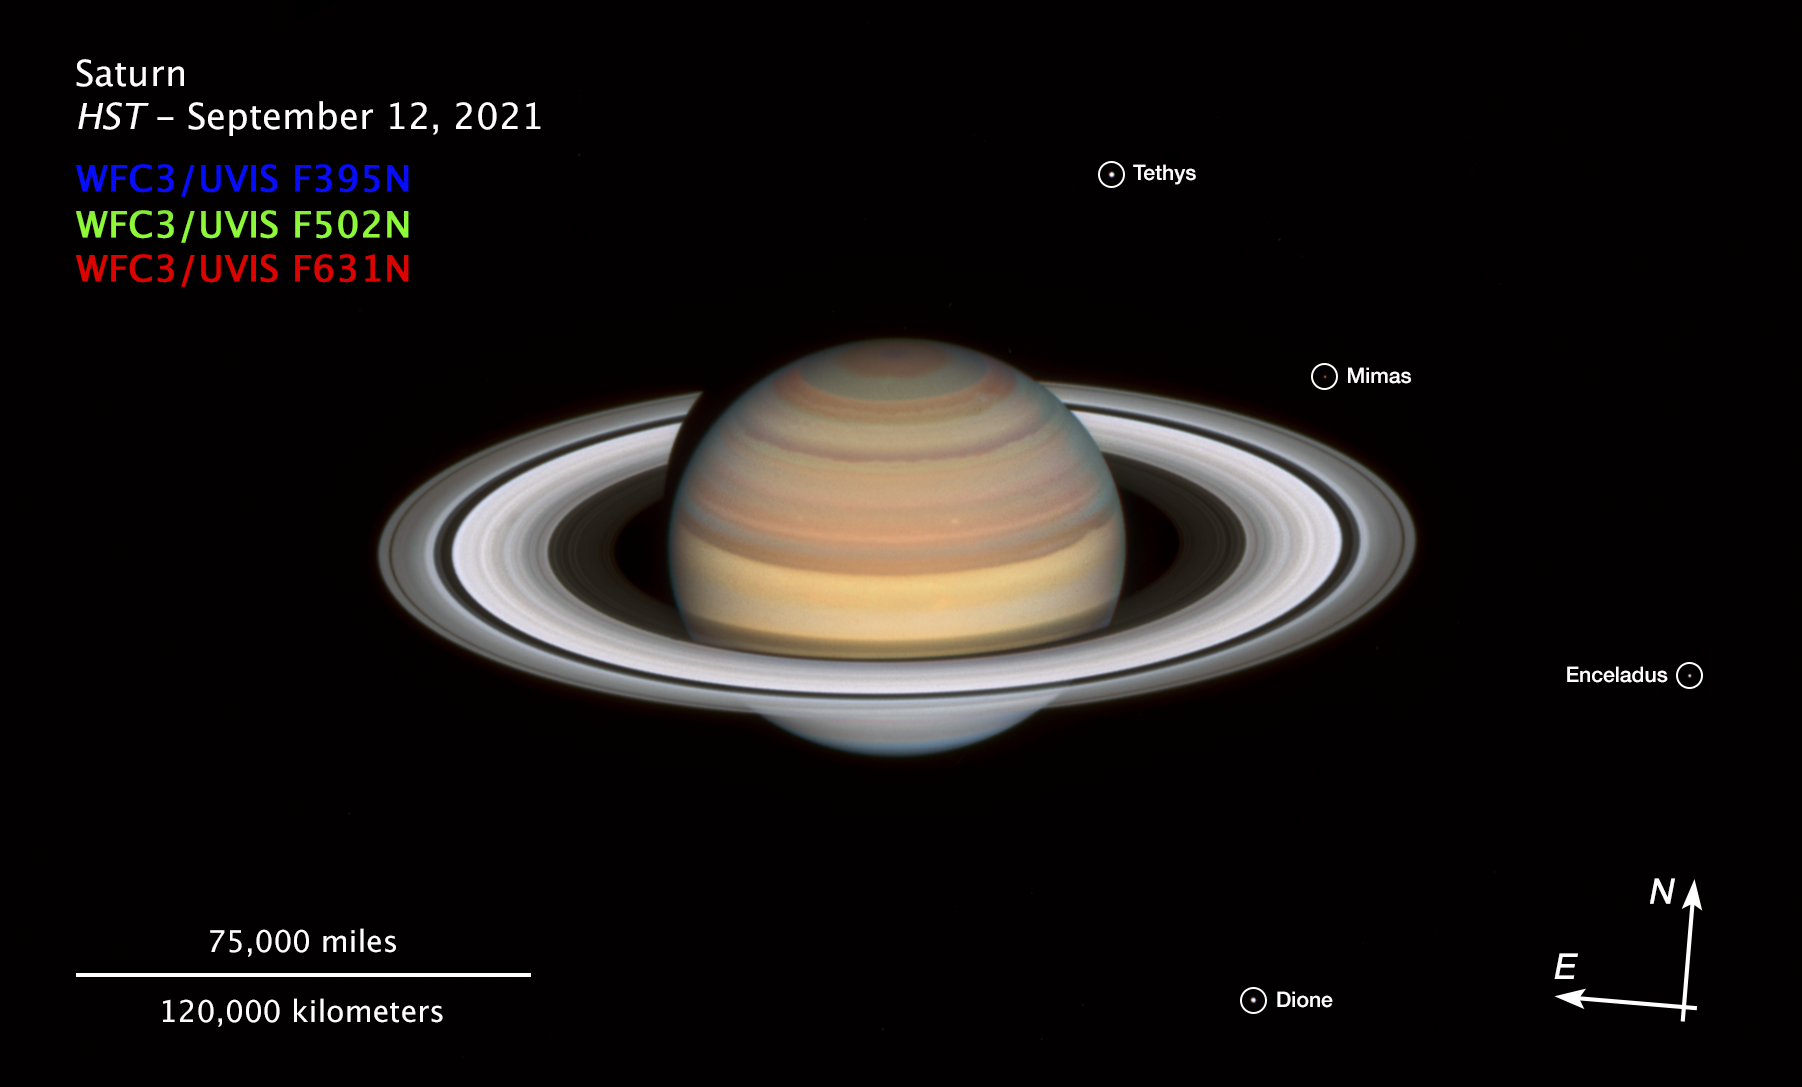 Снимок Сатурна Хабблом, сделанный 12 сентября 2021 г. Фото: Эми Саймон / NASA-GSFC, Майкл Х. Вонг / Калифорнийский университет в Беркли, Алиса Паган / STScl